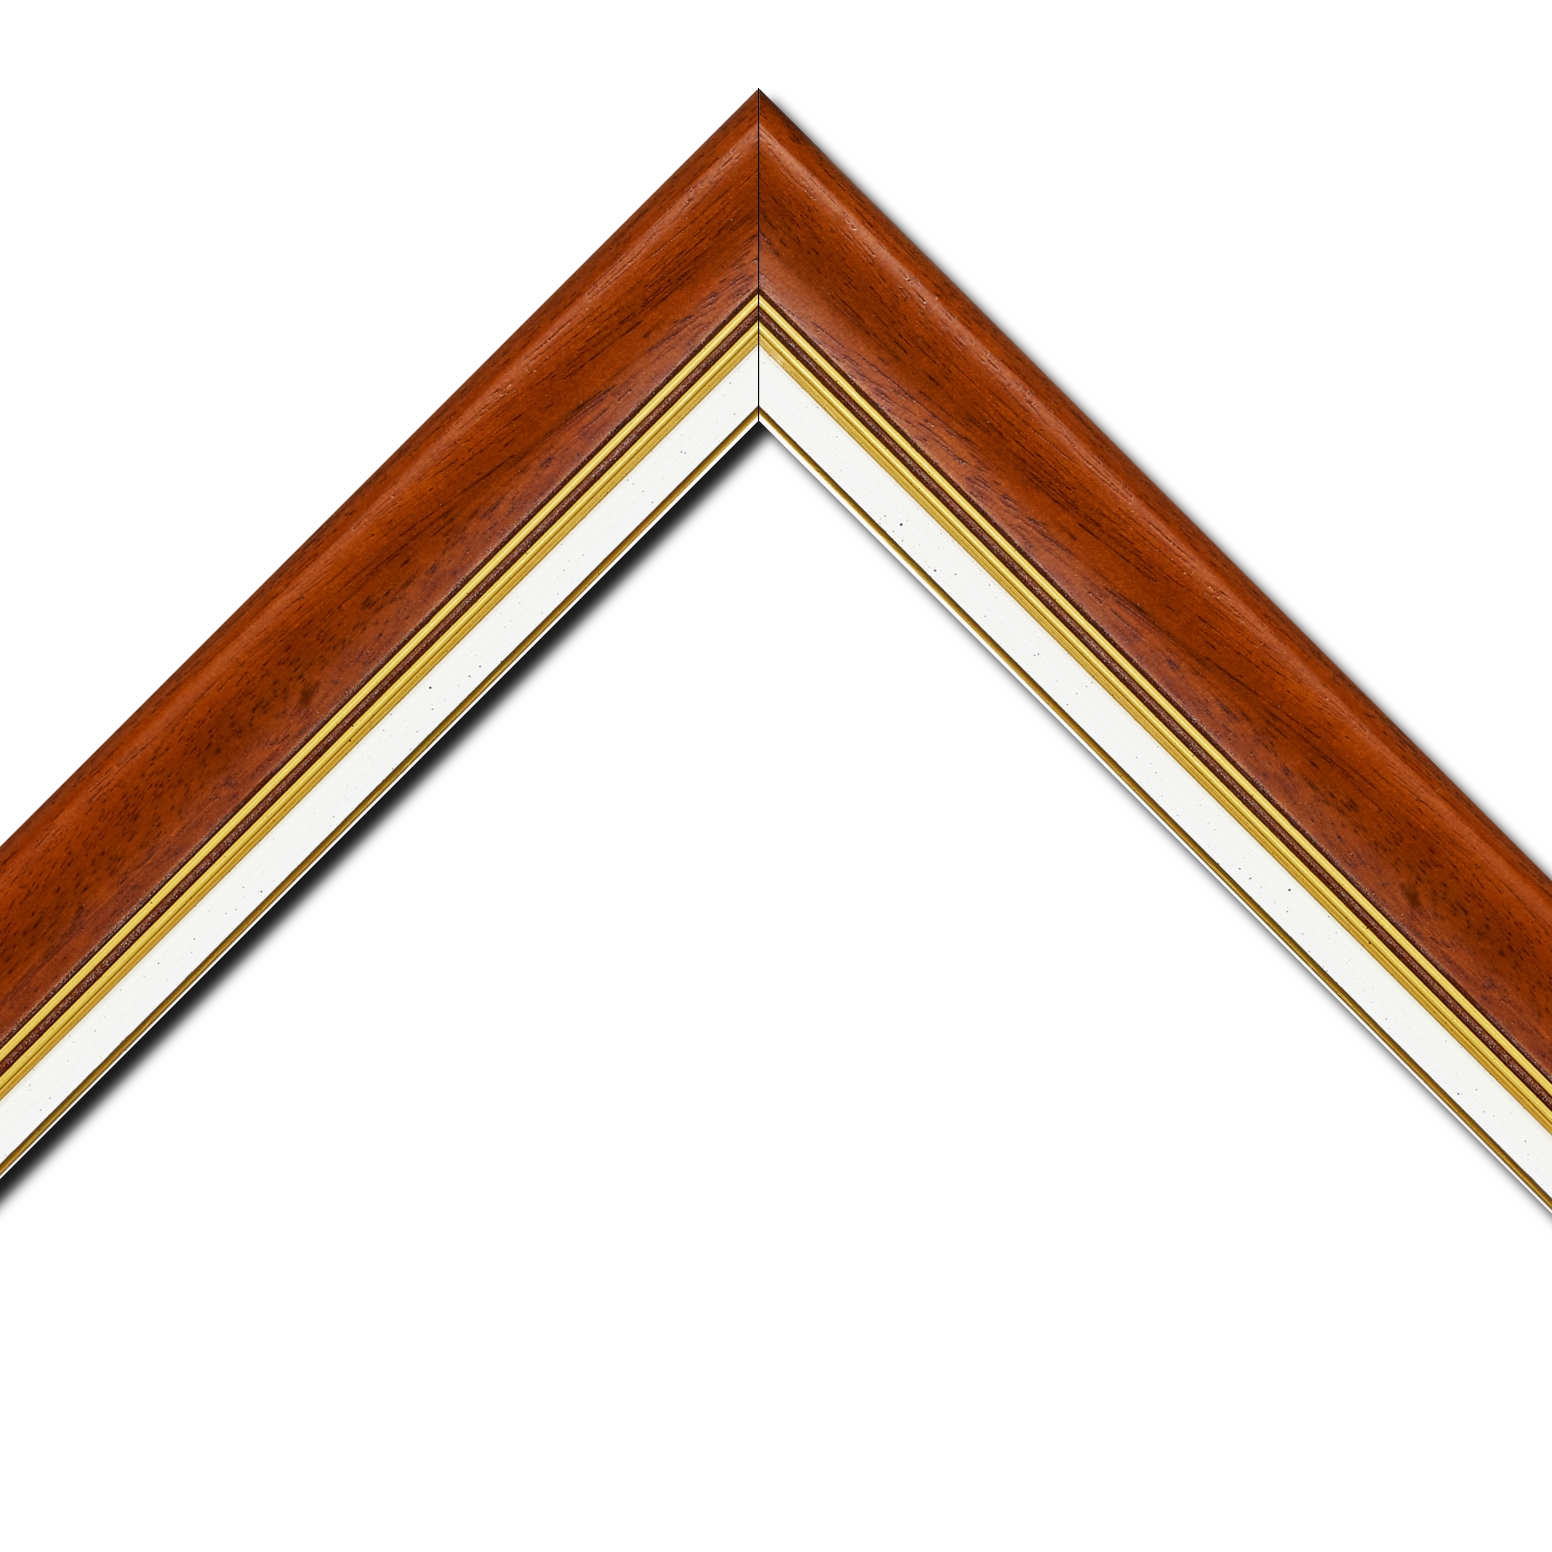 Baguette bois profil incurvé largeur 5.7cm de couleur marron ton bois marie louise blanche mouchetée filet or intégré